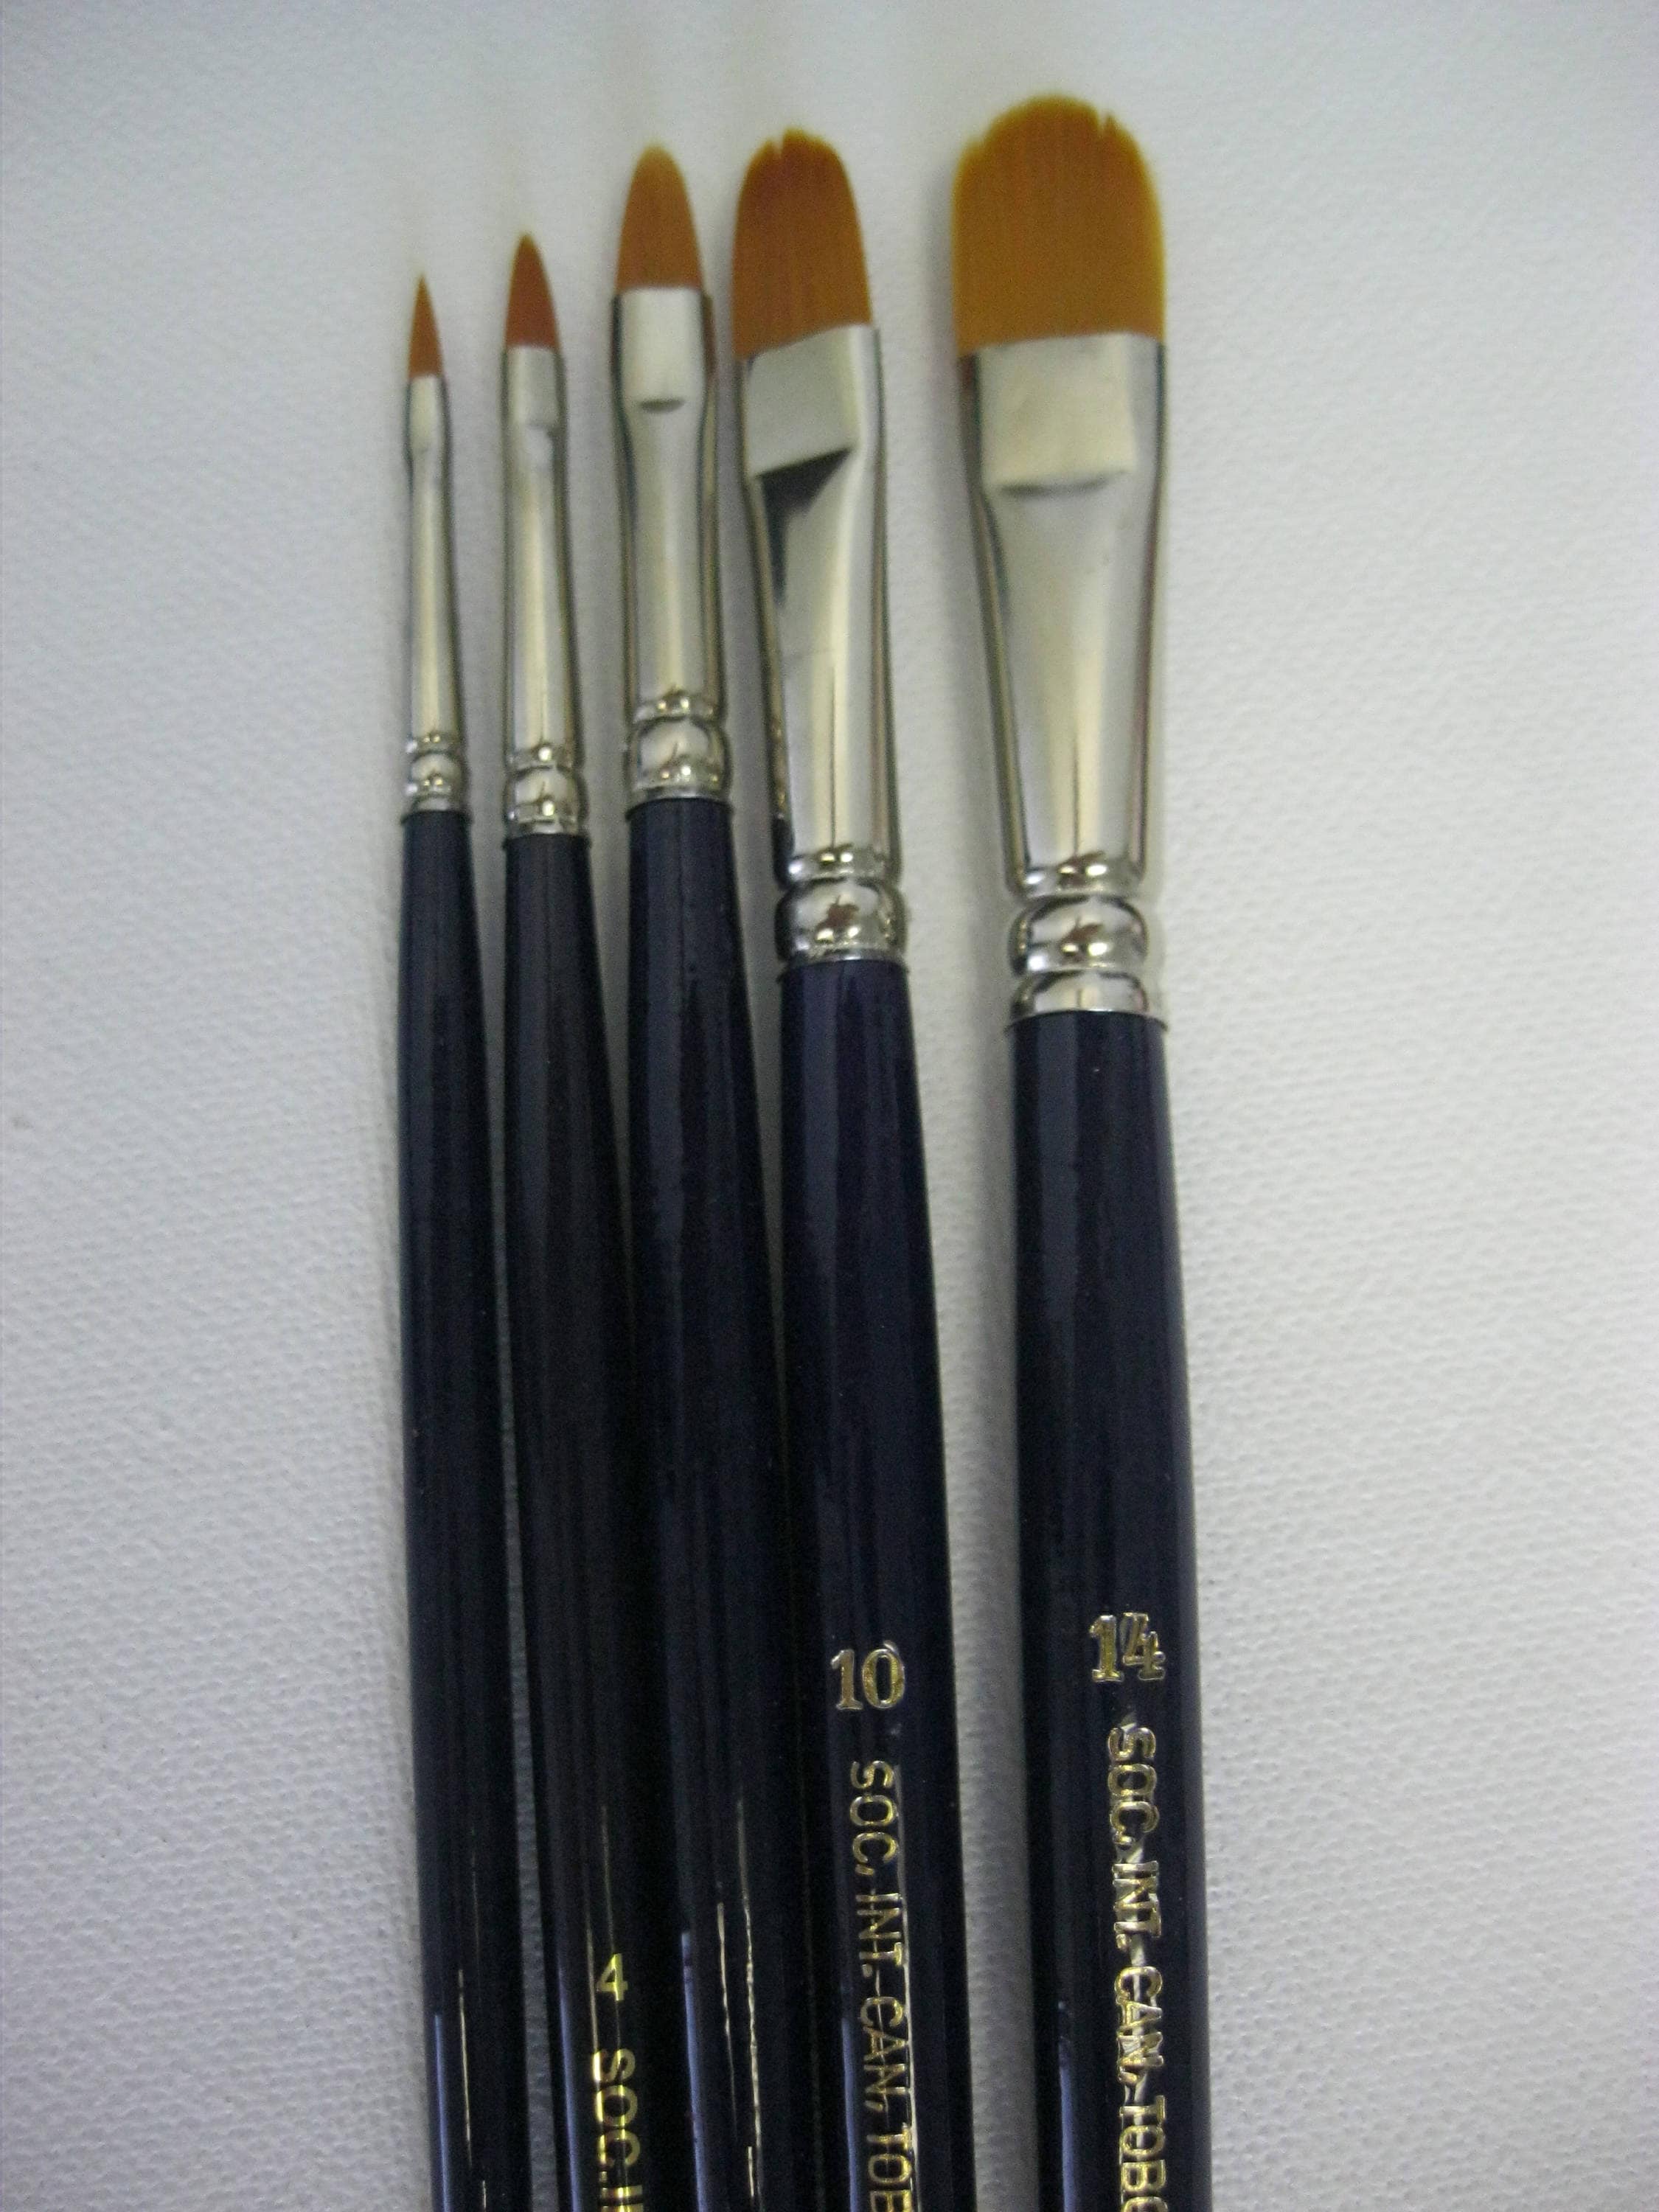 Professional Oil Paint Brushes (6-pcs Set) Filbert Brushes - Long-Lasting